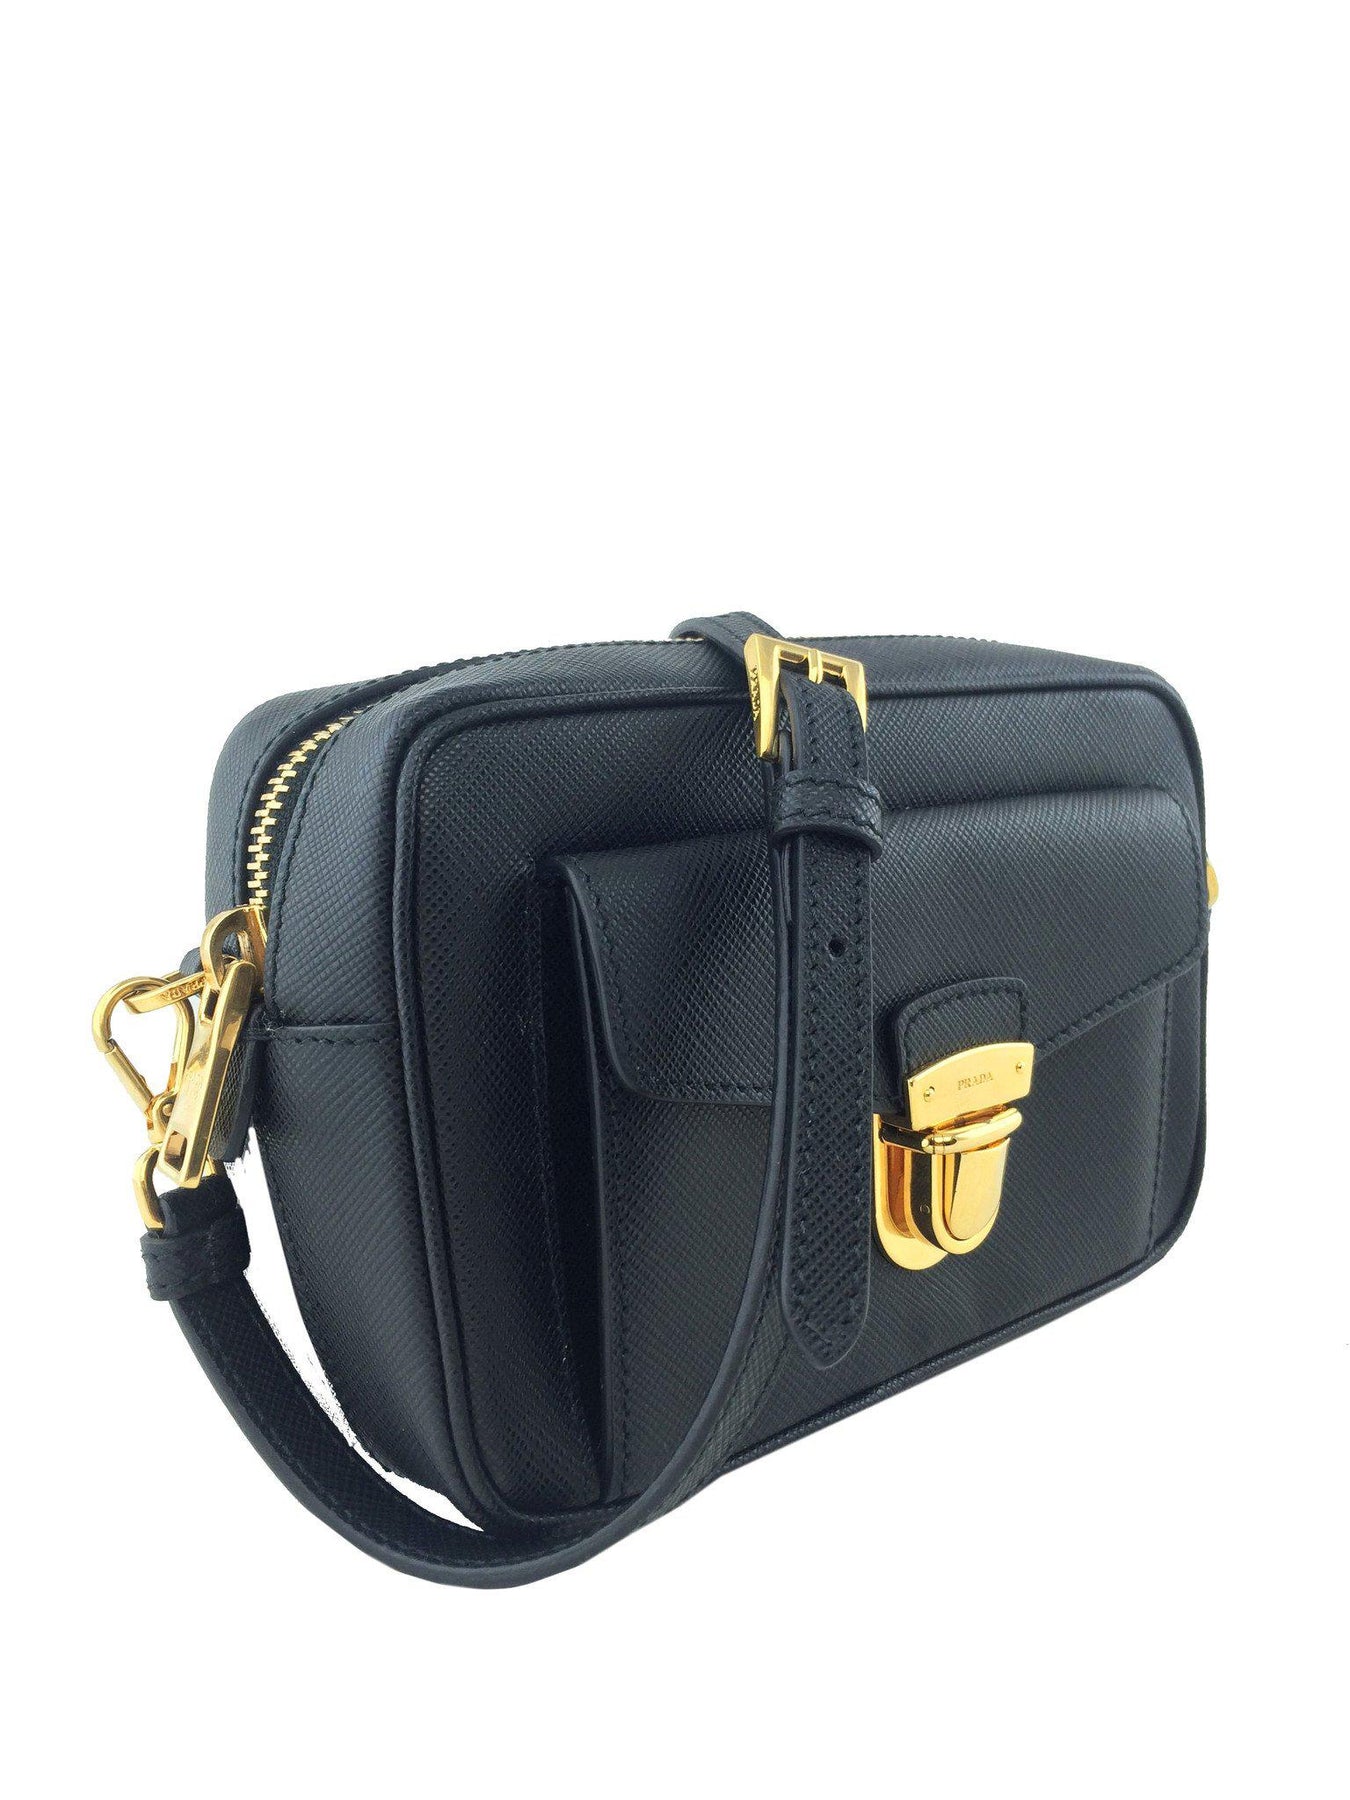 Prada Saffiano Leather Small Crossbody Bag - Consigned Designs